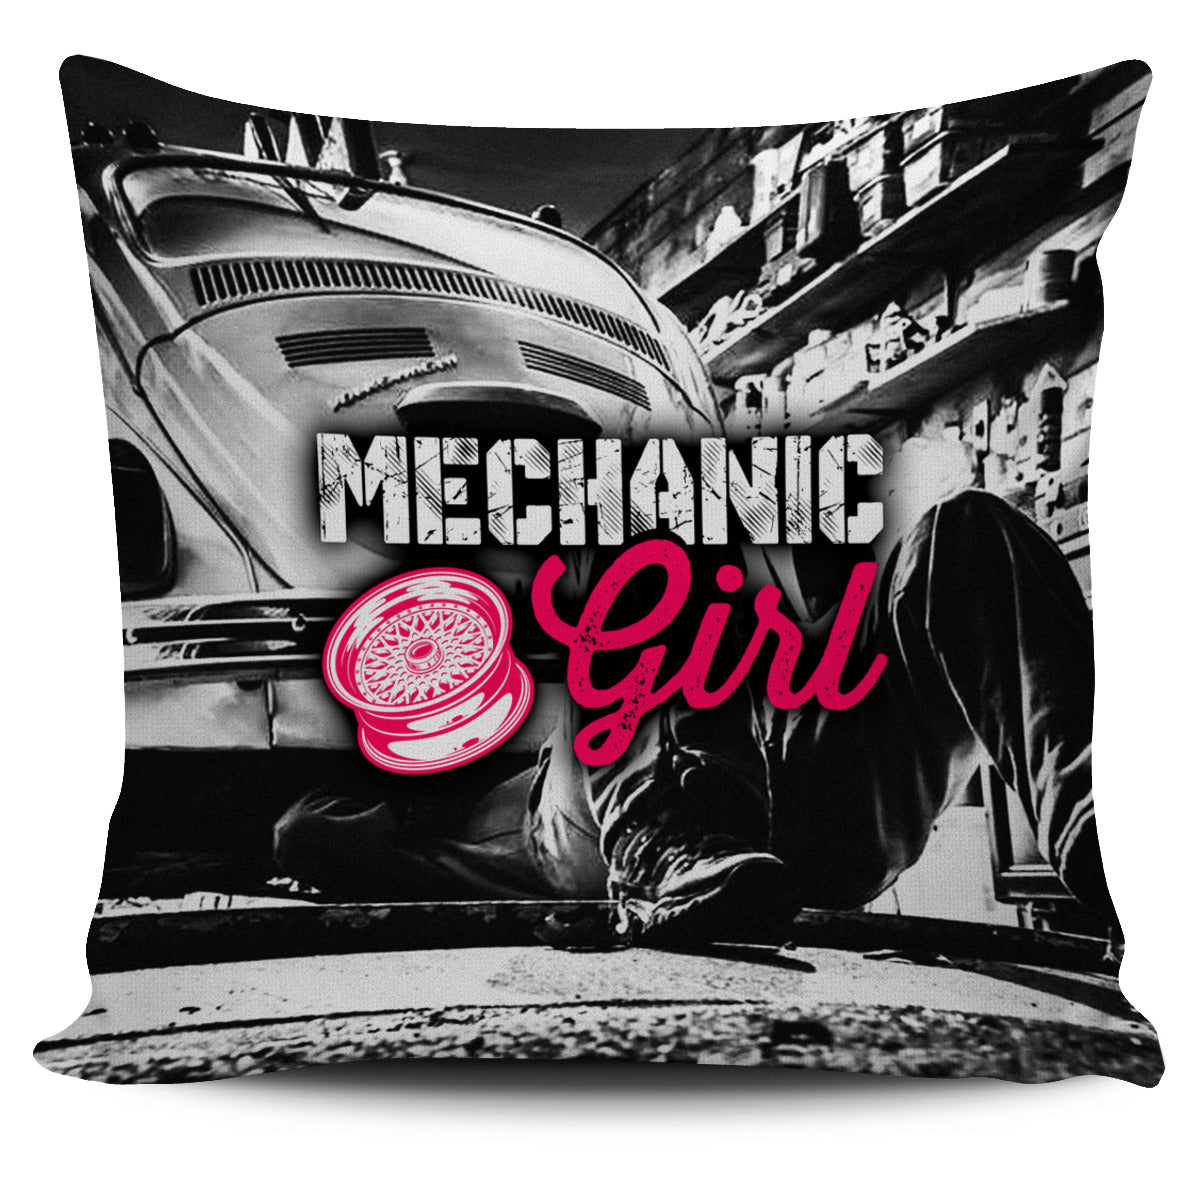 Mechanic Girl Pillow Cover